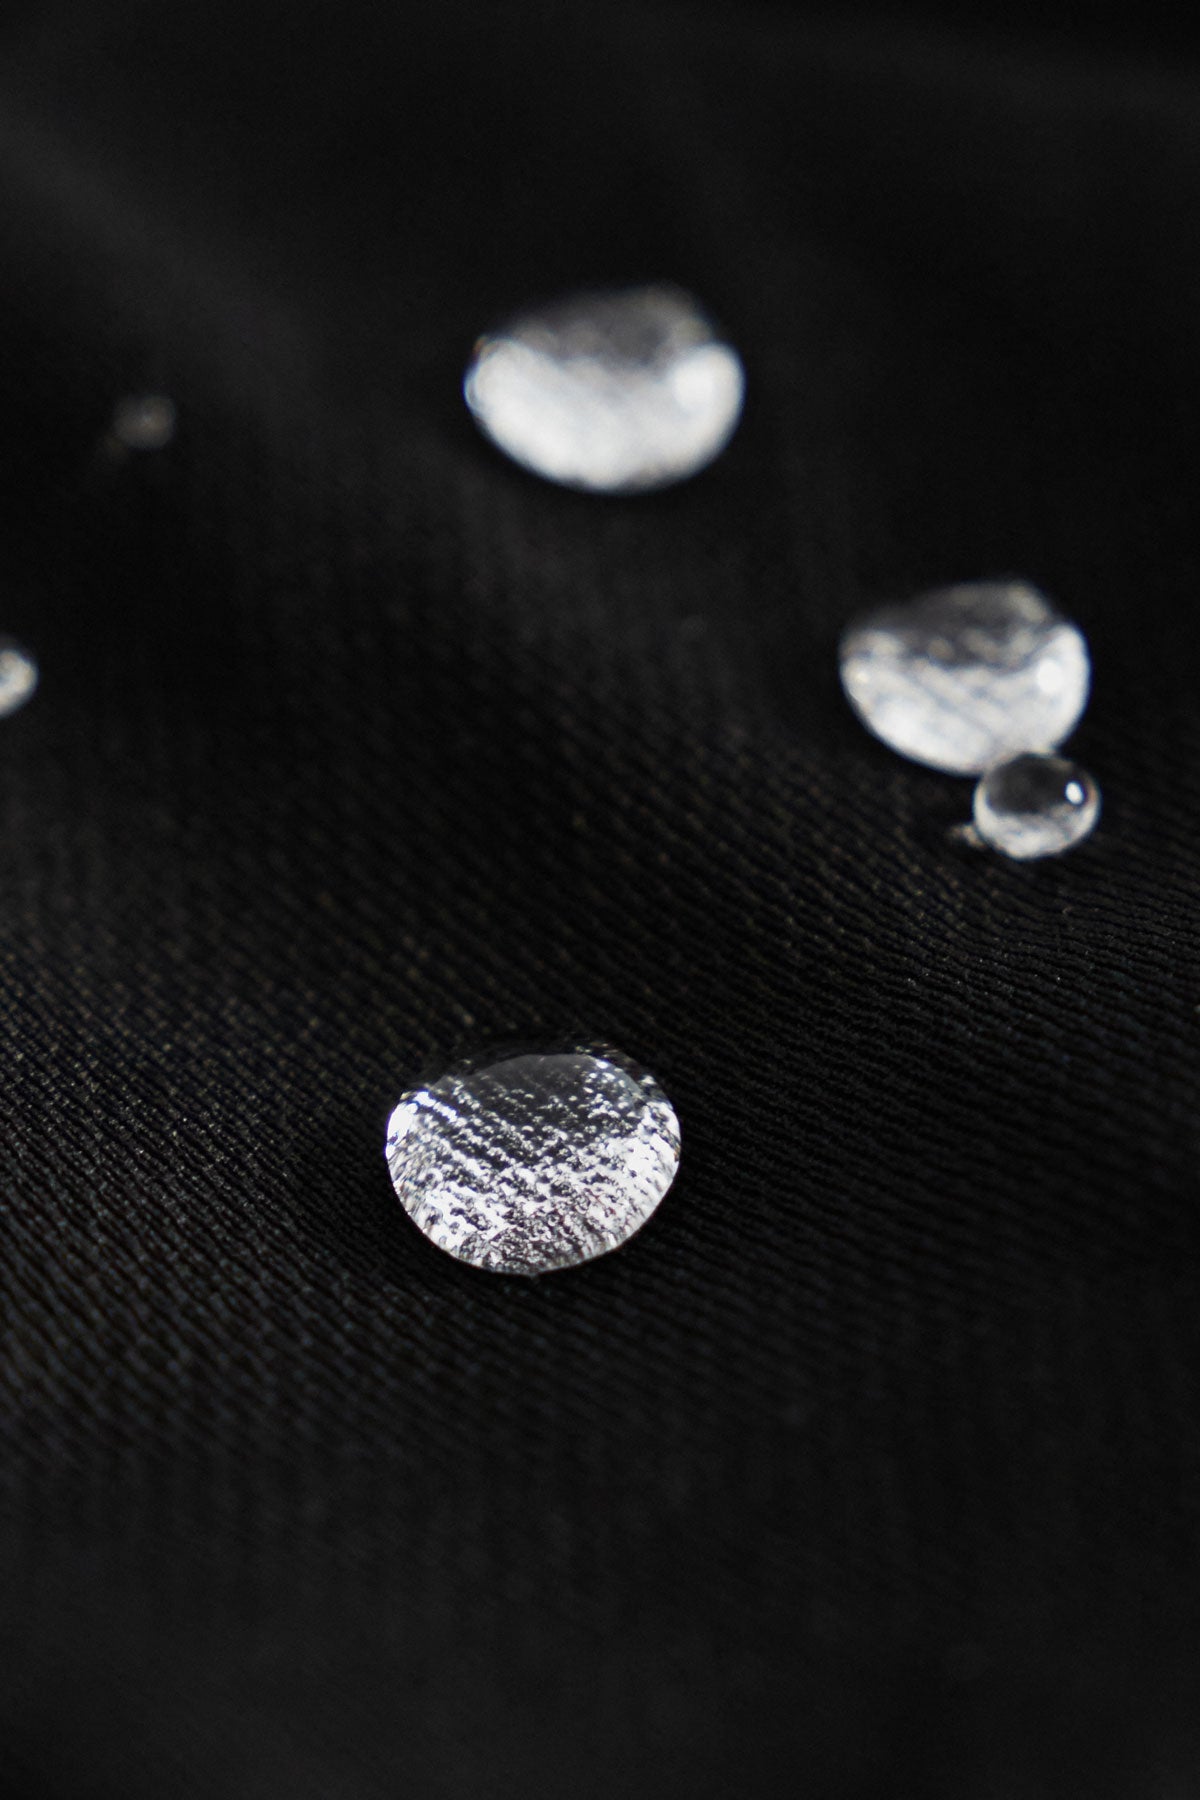 Camiseta de hombre en negro de Sepiia, suave y cómoda, perfecta para cualquier ocasión. Foto gota.